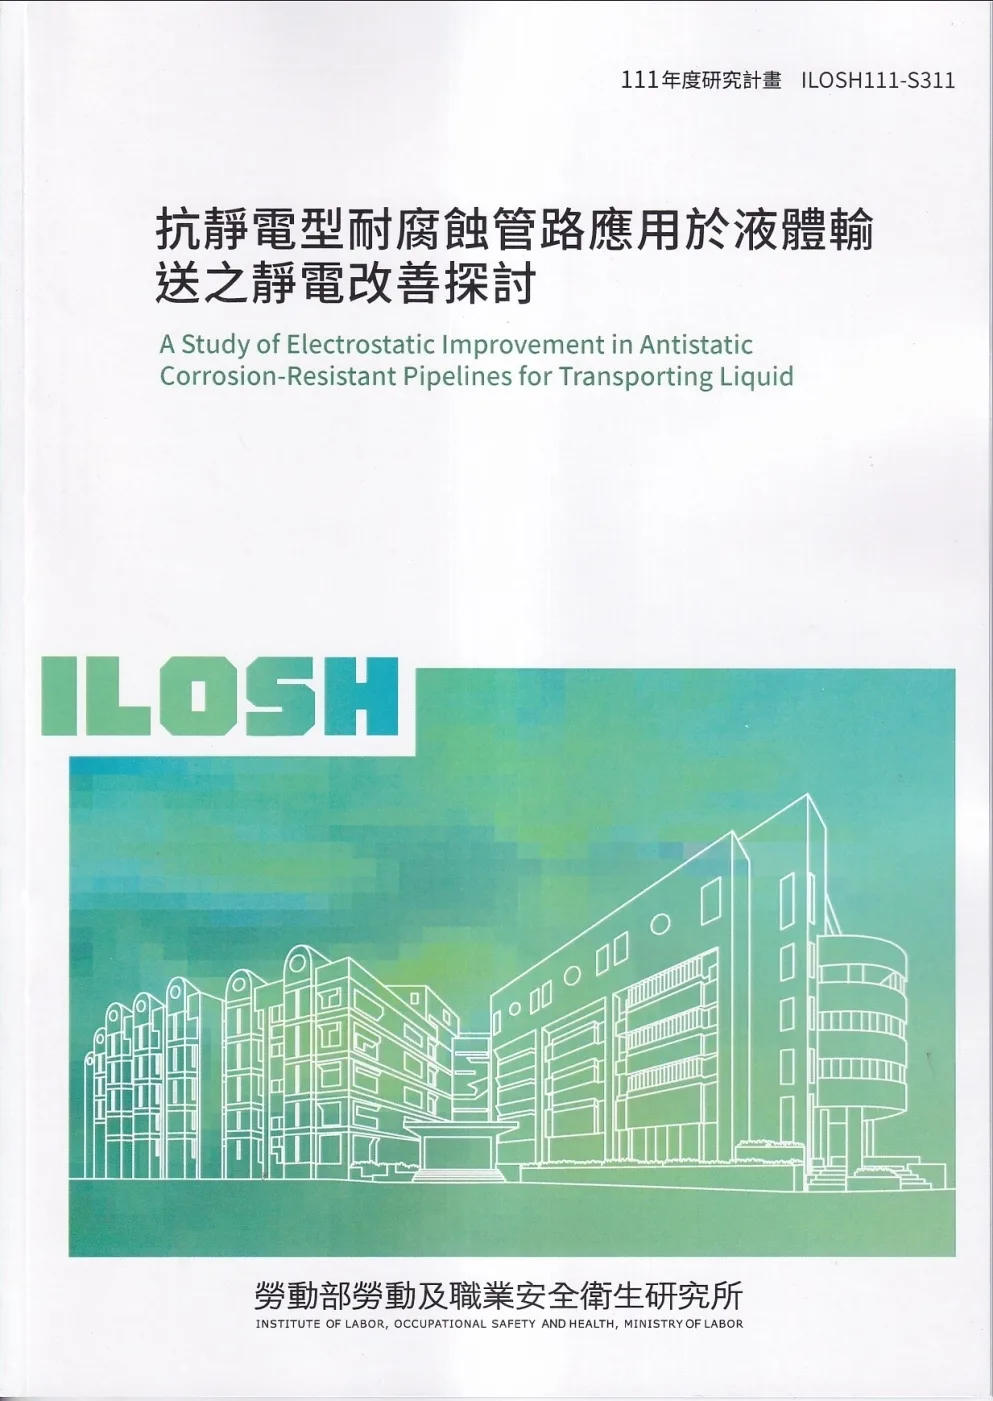 抗靜電型耐腐蝕管路應用於液體輸送之靜電改善探討ILOSH111-S311